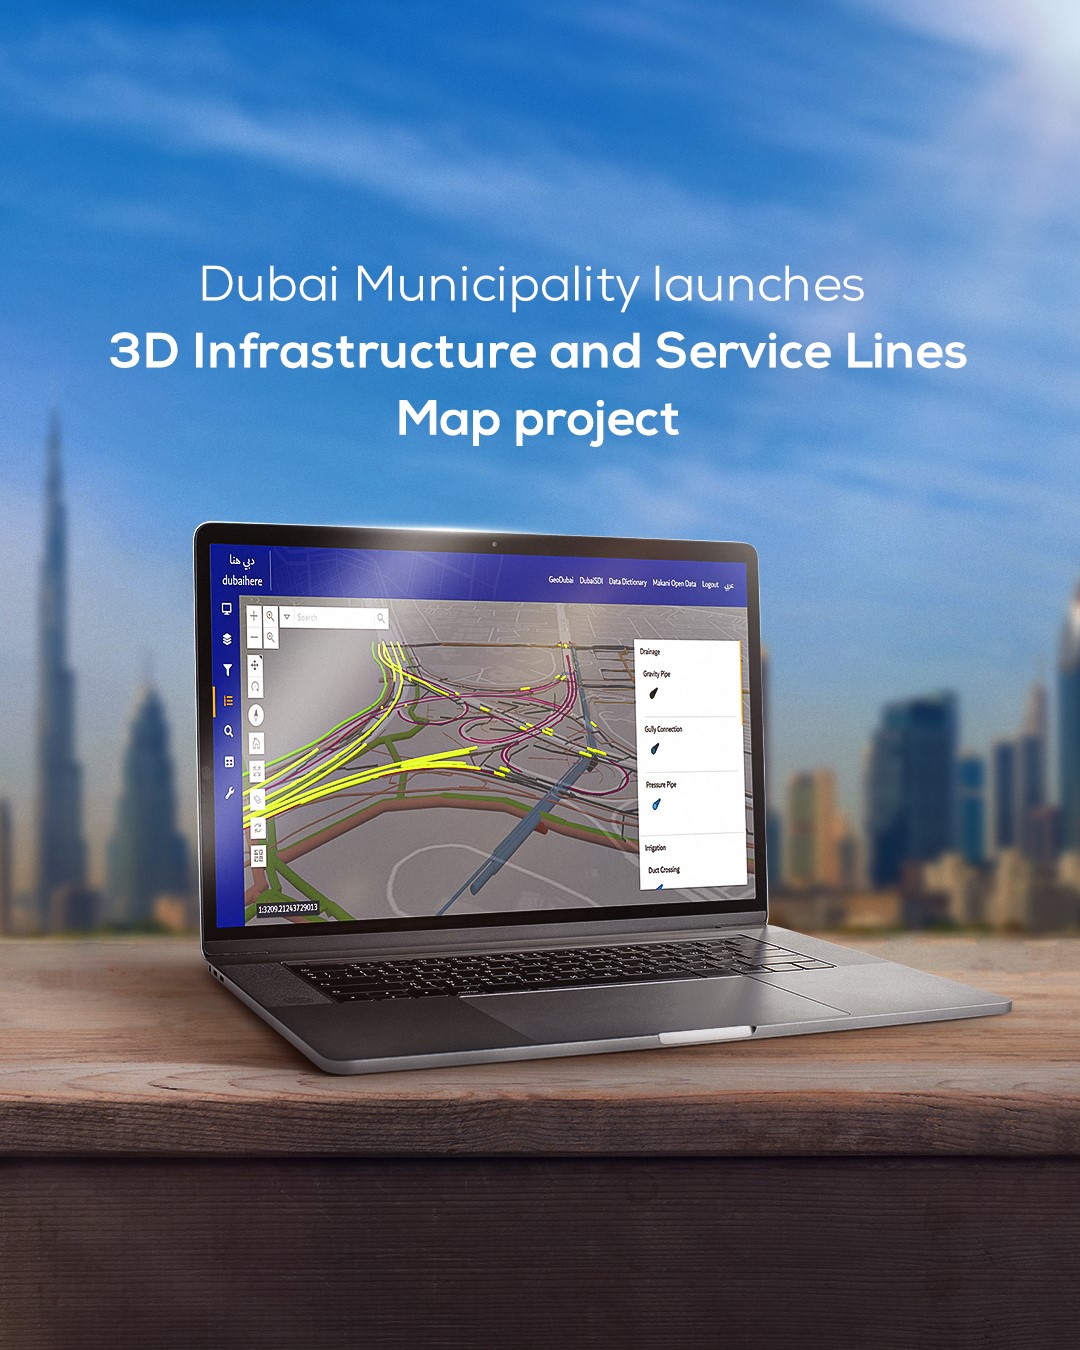 بلدية دبي تطلق مشروع خرائط ثلاثية الأبعاد للبنية التحتية وخطوط الخدمة – الأخبار – الإمارات